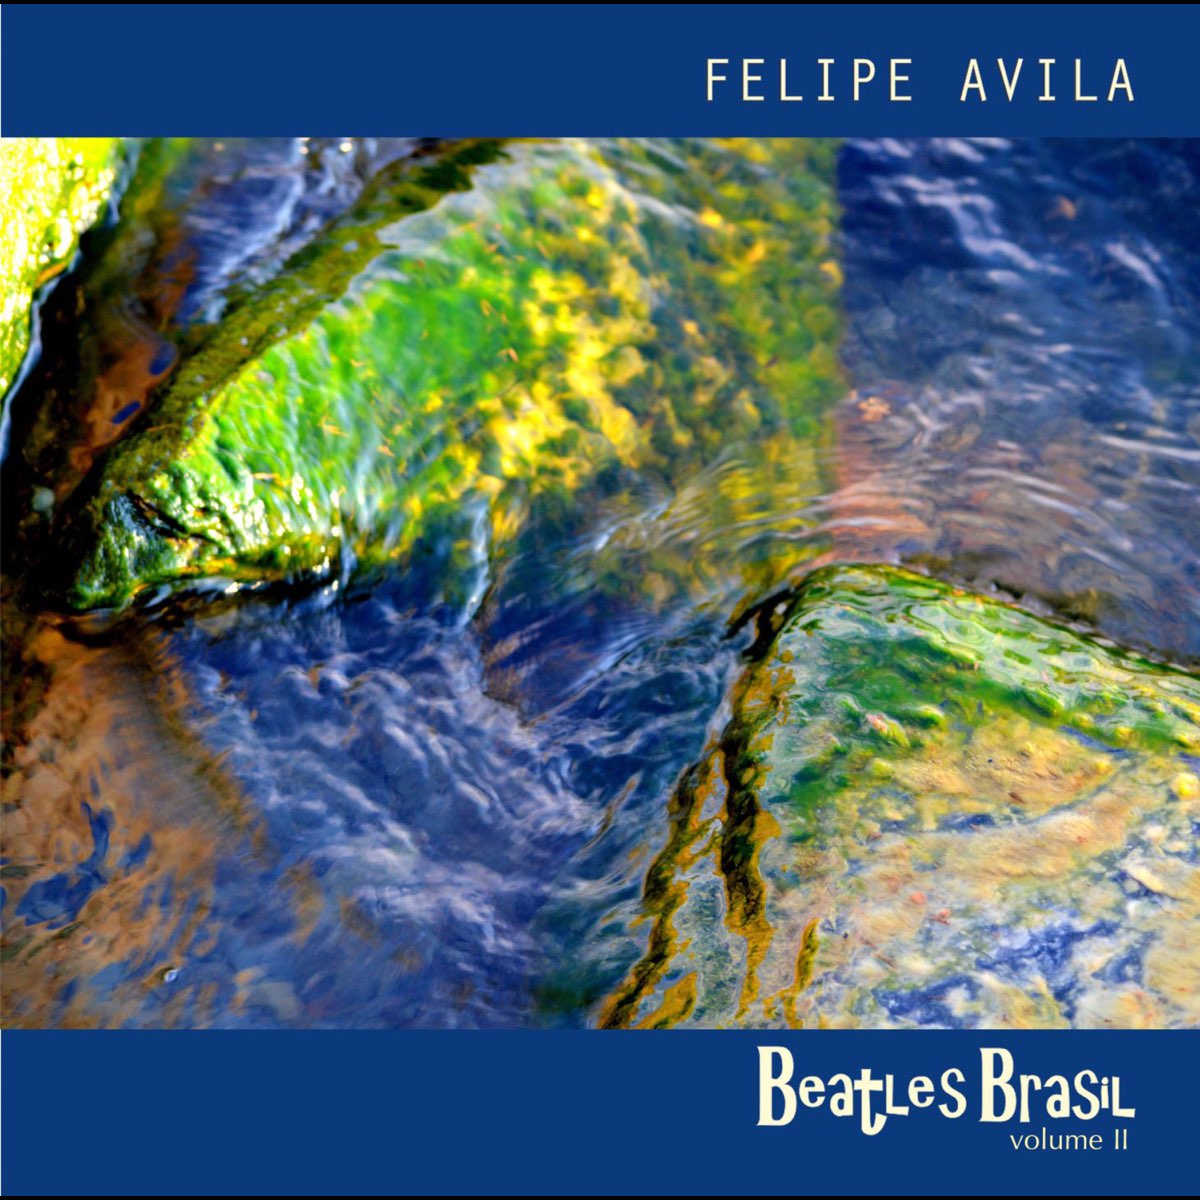 Beatles Brasil Vol. 2 - Album by Felipe Avila - Apple Music